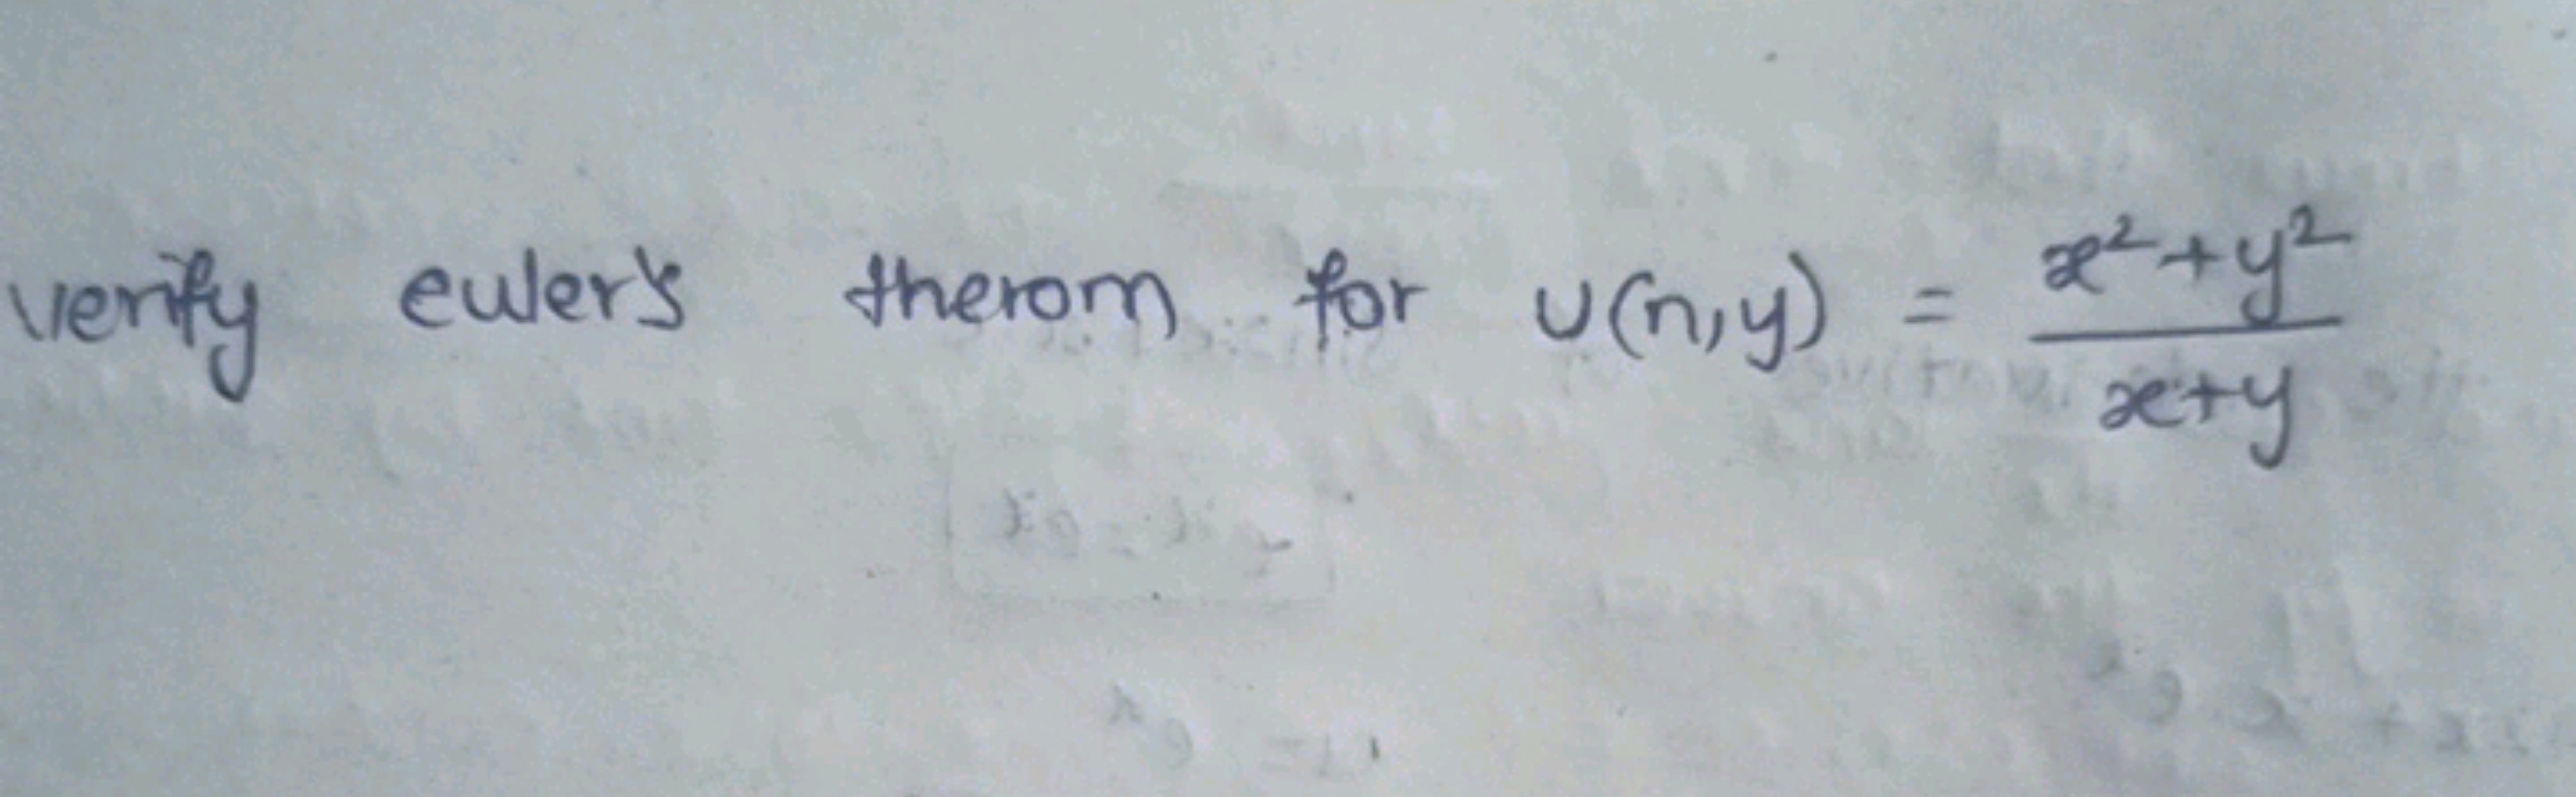 verify eulers therom for u(n,y)=x+yx2+y2​
